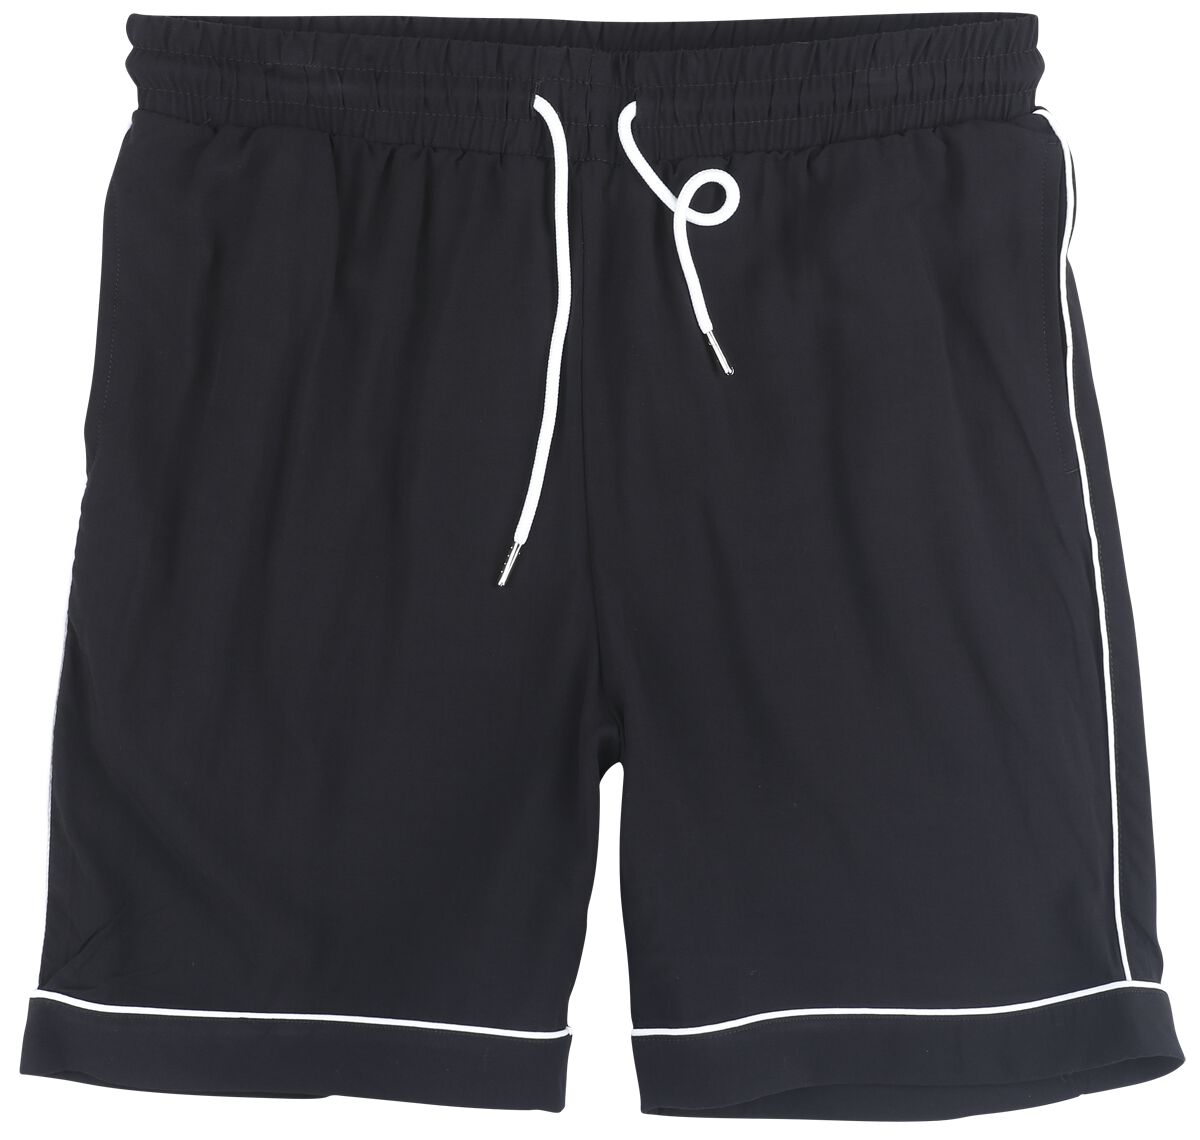 Urban Classics Short - Bowling Shorts - S bis 3XL - für Männer - Größe M - schwarz